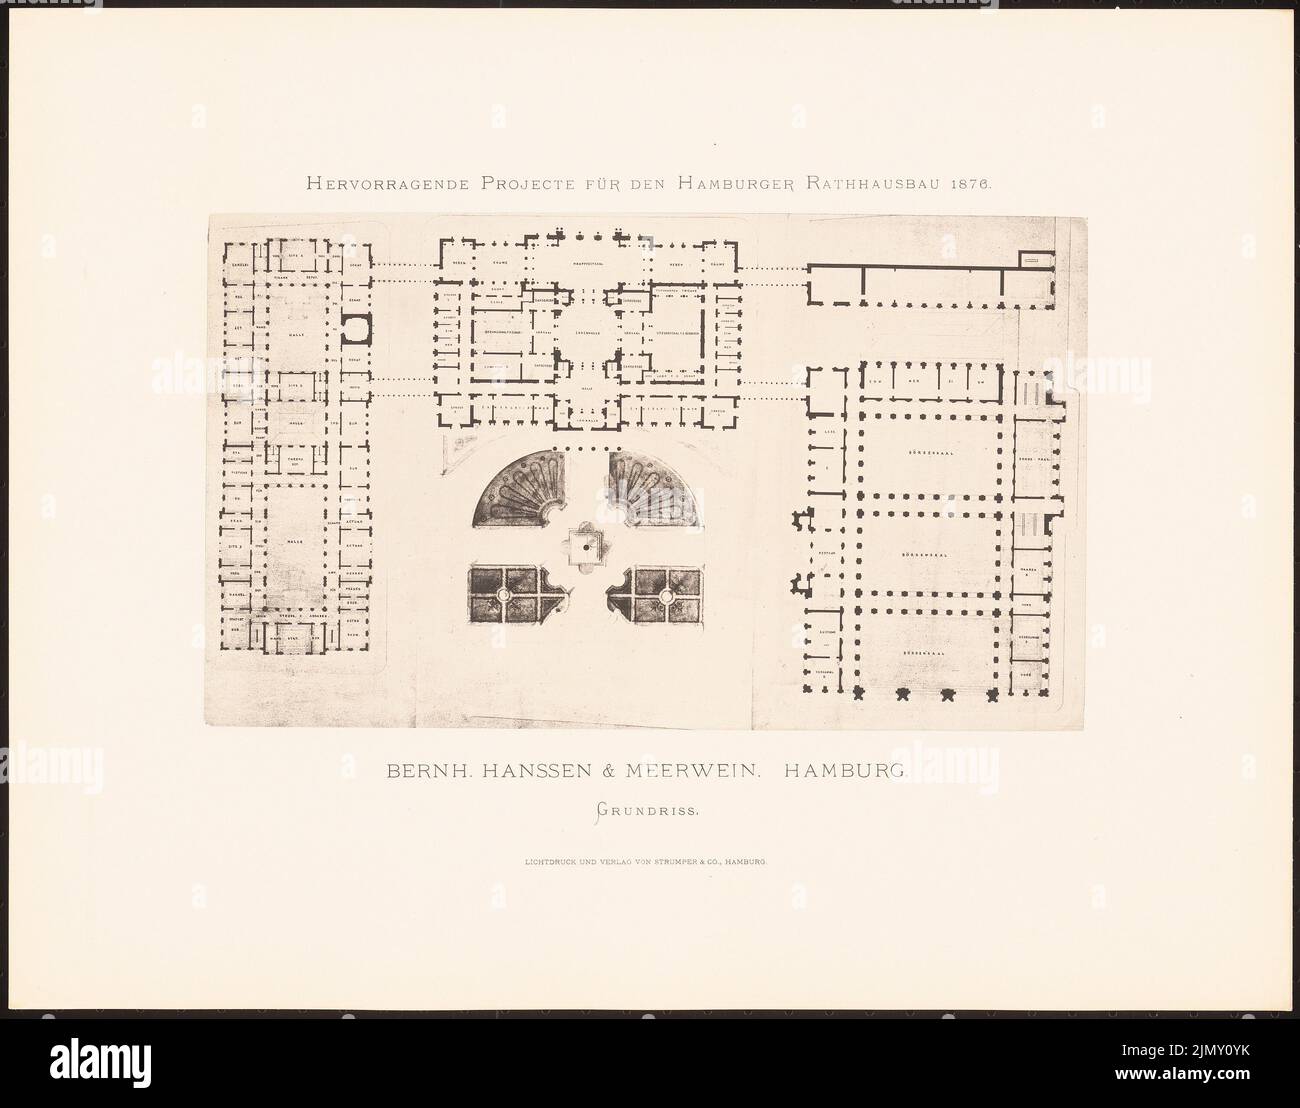 Hanssen & Meerwein, hervorragende Projekte für den Hamburger Rathausbau 1876 (1876-1876): Grundriß. Leichter Druck auf Papier, 35,2 x 44,9 cm (einschließlich Scankanten) Stockfoto